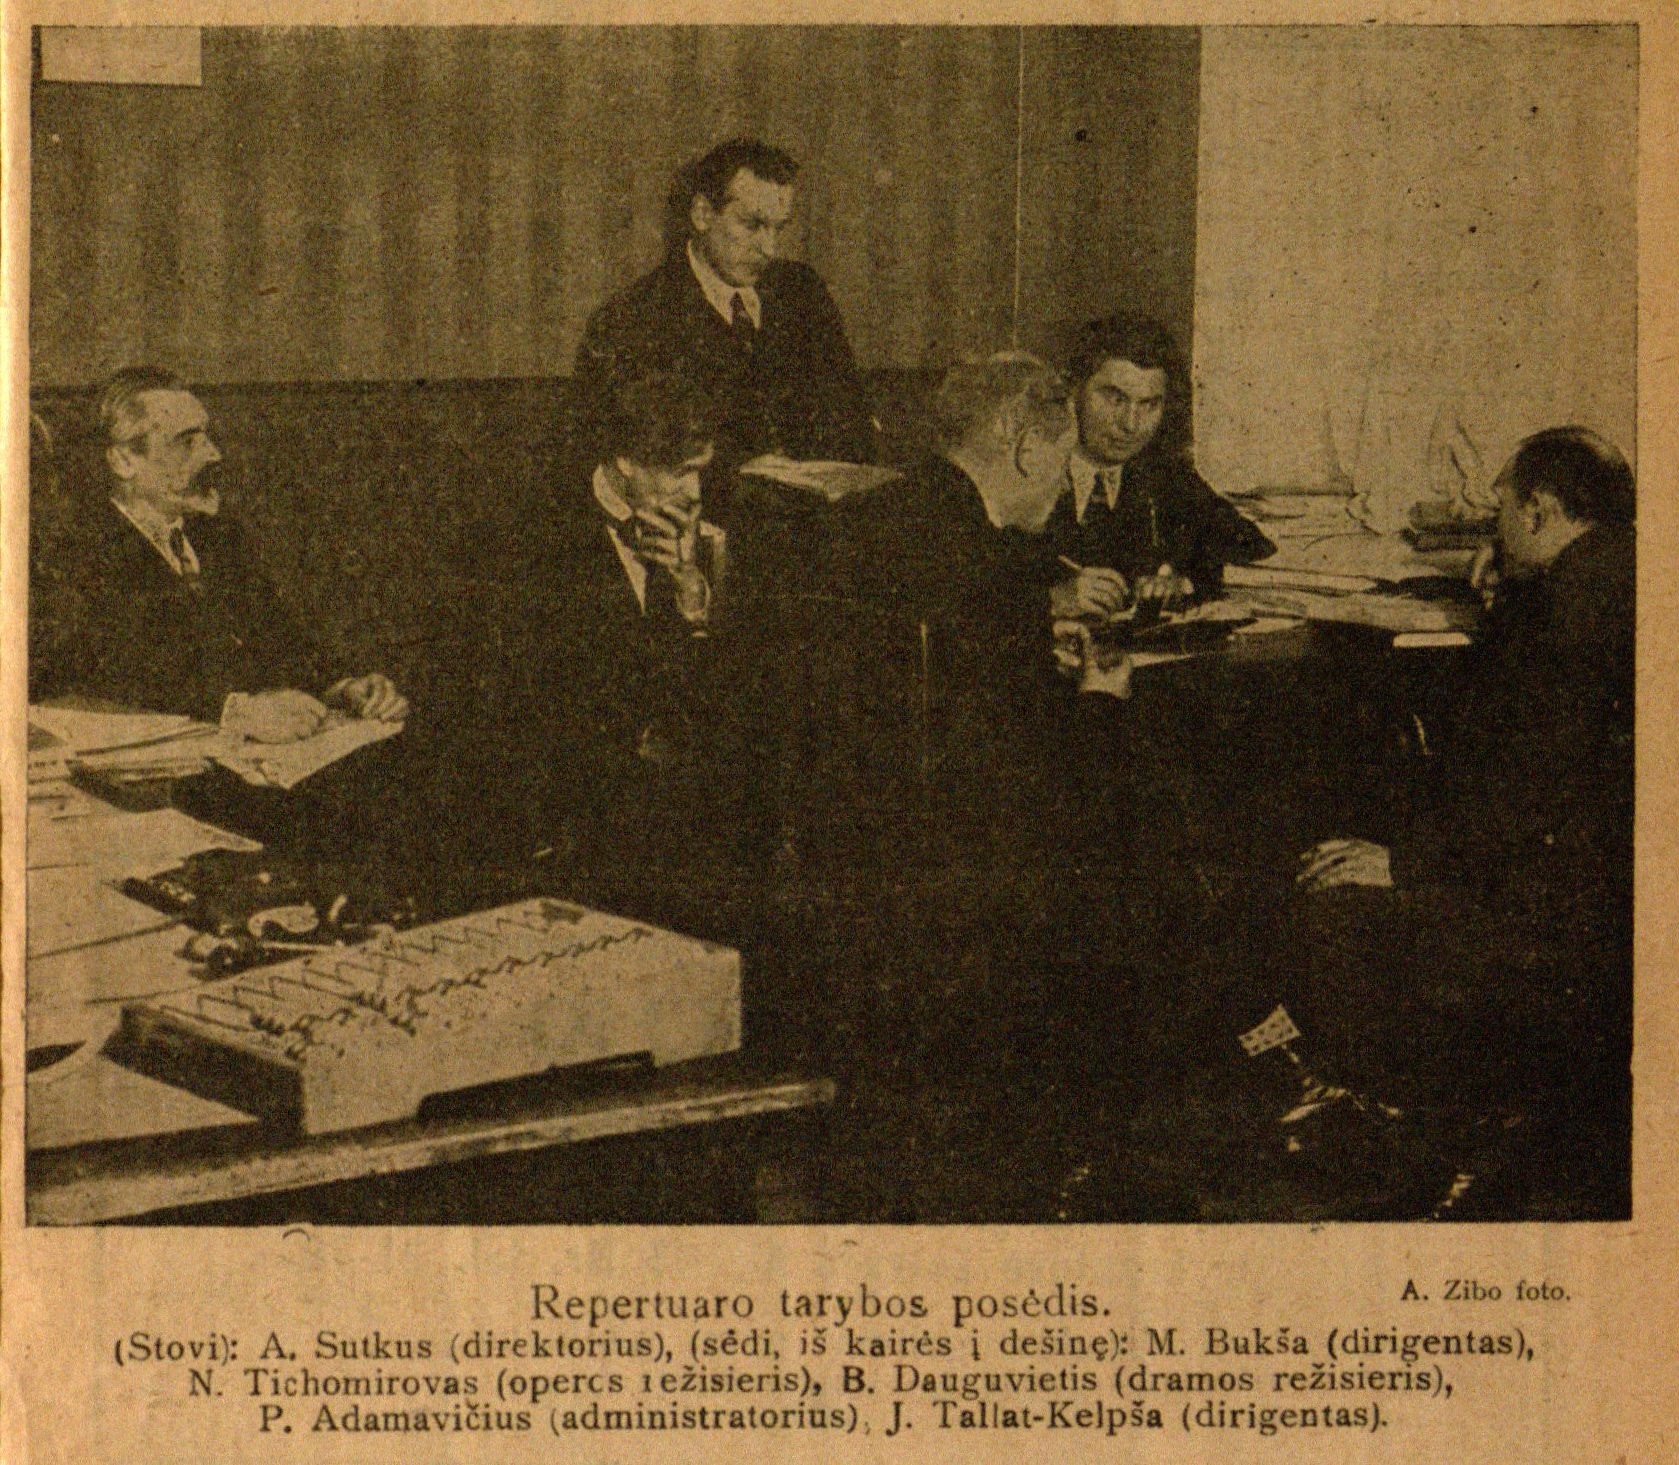 Repertuaro tarybos posėdis. Stovi: A. Sutkus (direktorius), sėdi iš kairės į dešinę: M. Bukša (dirigentas), N. Tichomirovas (operos režisieris), B. Dauguvietis (dramos režisieris), P. Adomavičius (administratorius), J. Tallat-Kelpša (dirigentas): A. Žibo foto // 7 meno dienos. – 1928, Nr. 14, p. 3.